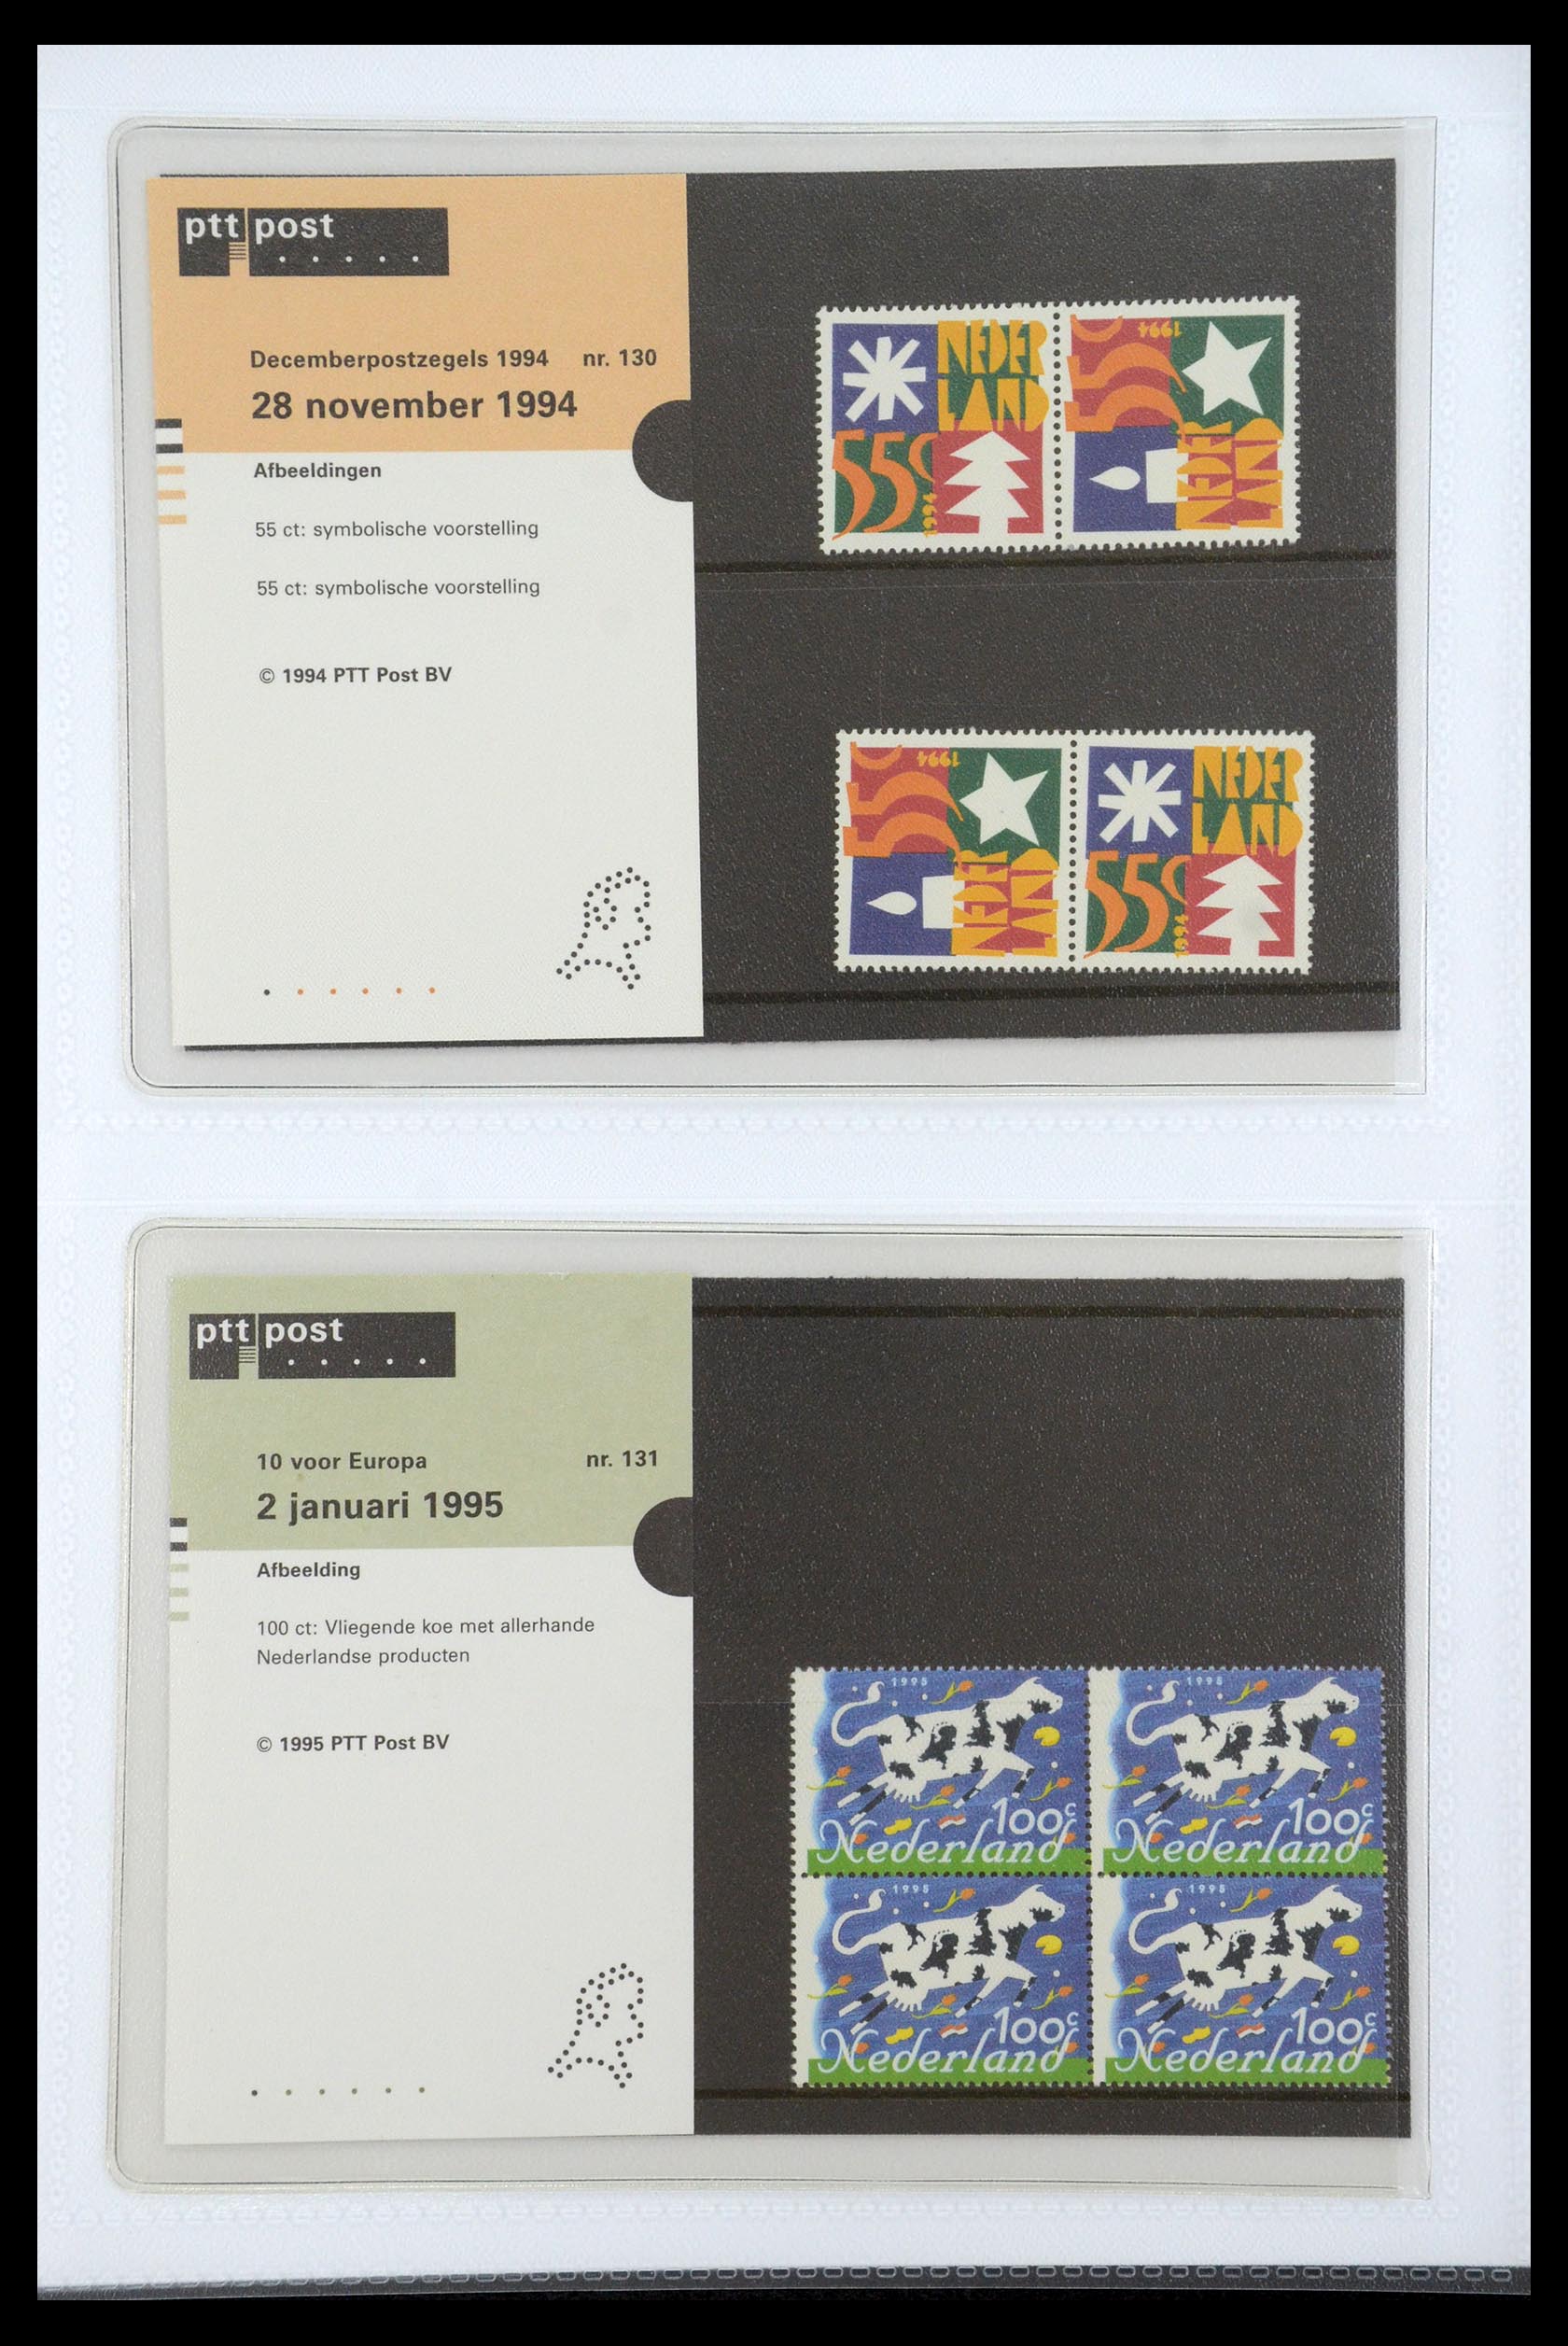 35947 068 - Stamp Collection 35947 Netherlands PTT presentation packs 1982-2019!